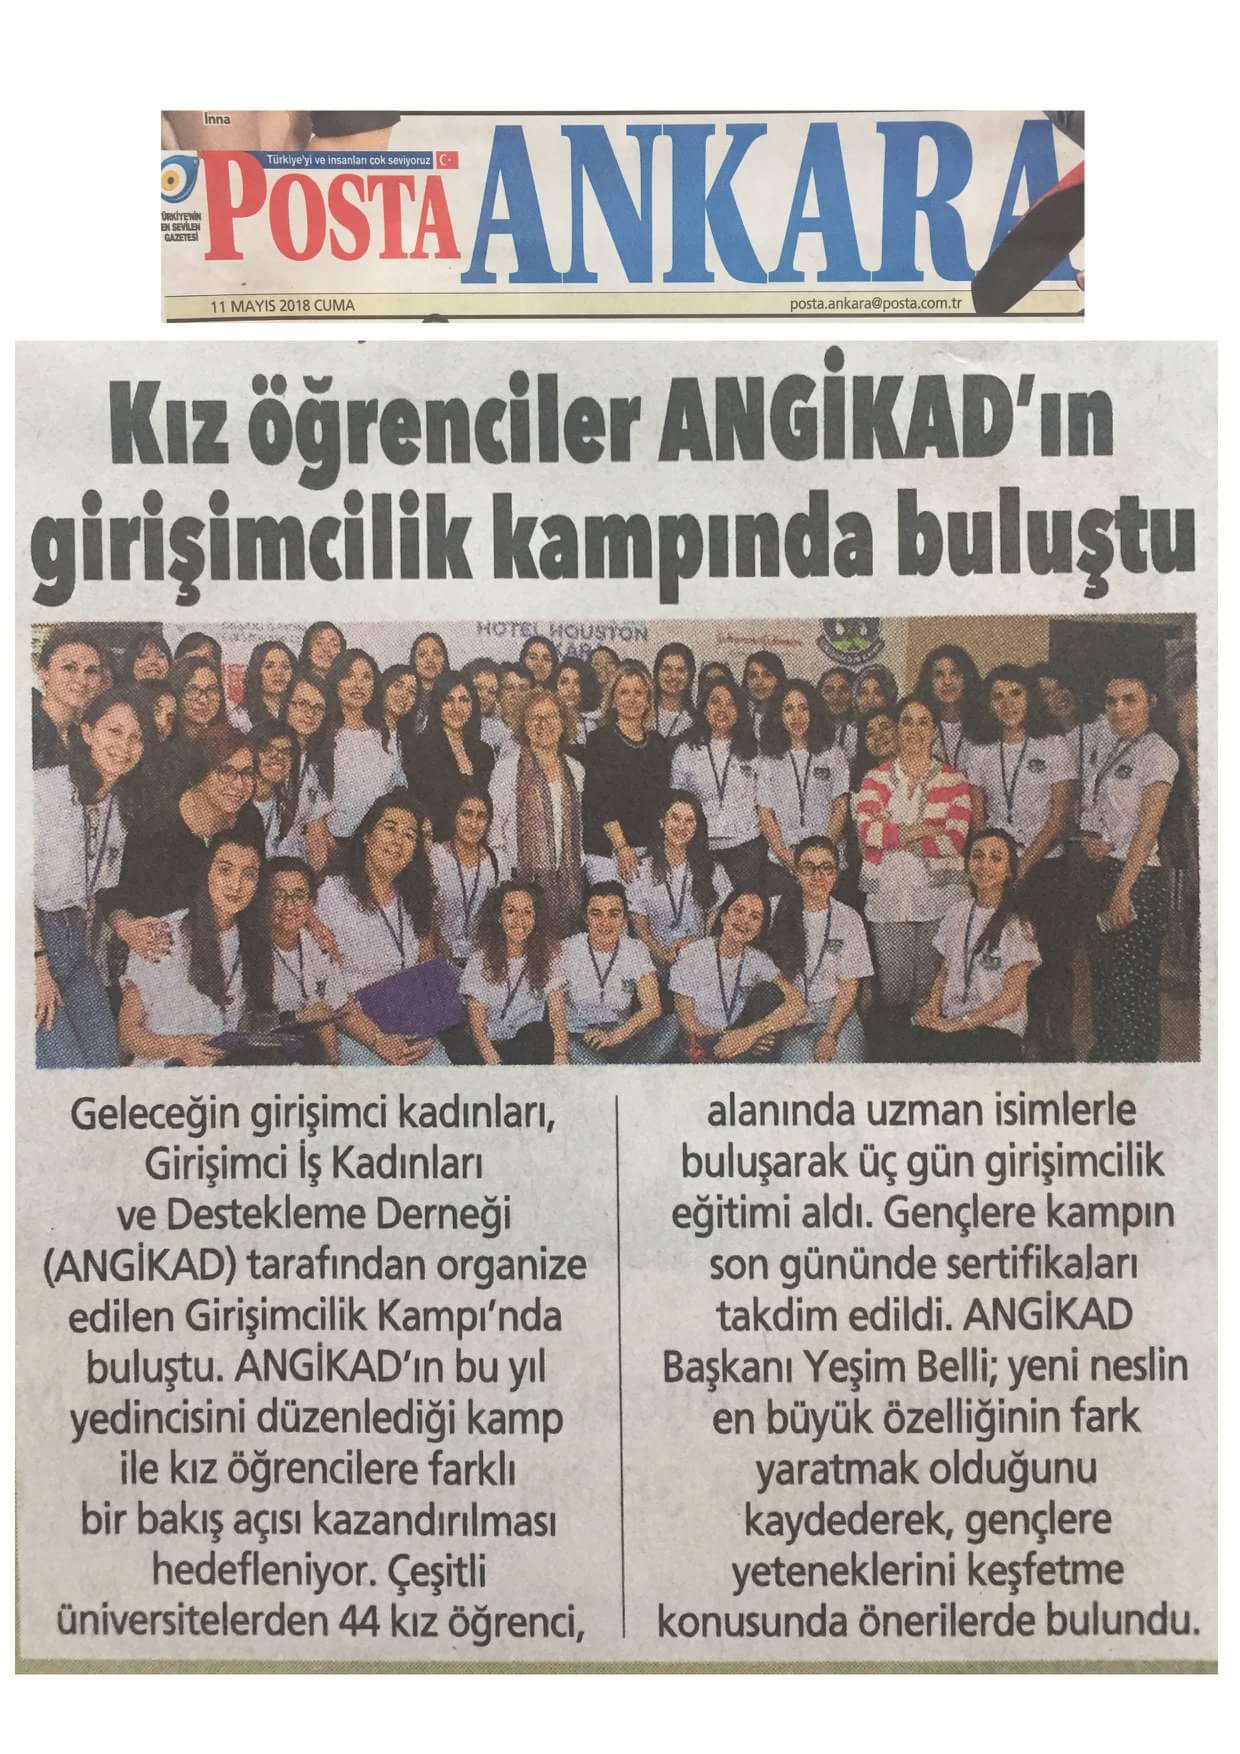 Posta Ankara - Kız Öğrenciler ANGİKAD'ın Girişimcilik Kampında Buluştu